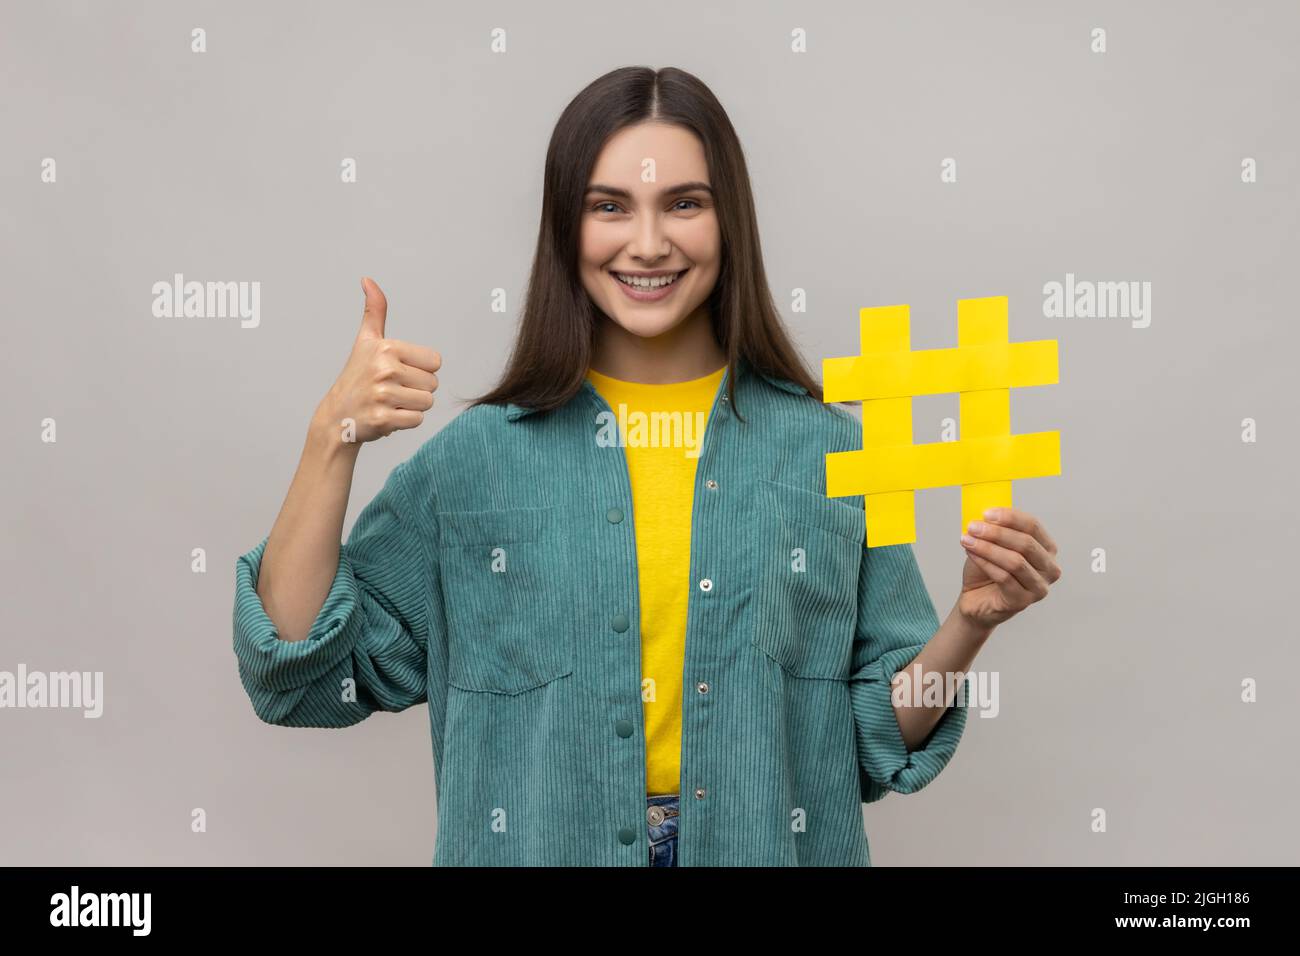 Wie und folgen Sie Trends, beliebte Blog. Optimistische Frau mit Hashtag-Symbol für soziale Medien und Daumen nach oben Geste in lässiger Jacke. Innenaufnahme des Studios isoliert auf grauem Hintergrund. Stockfoto